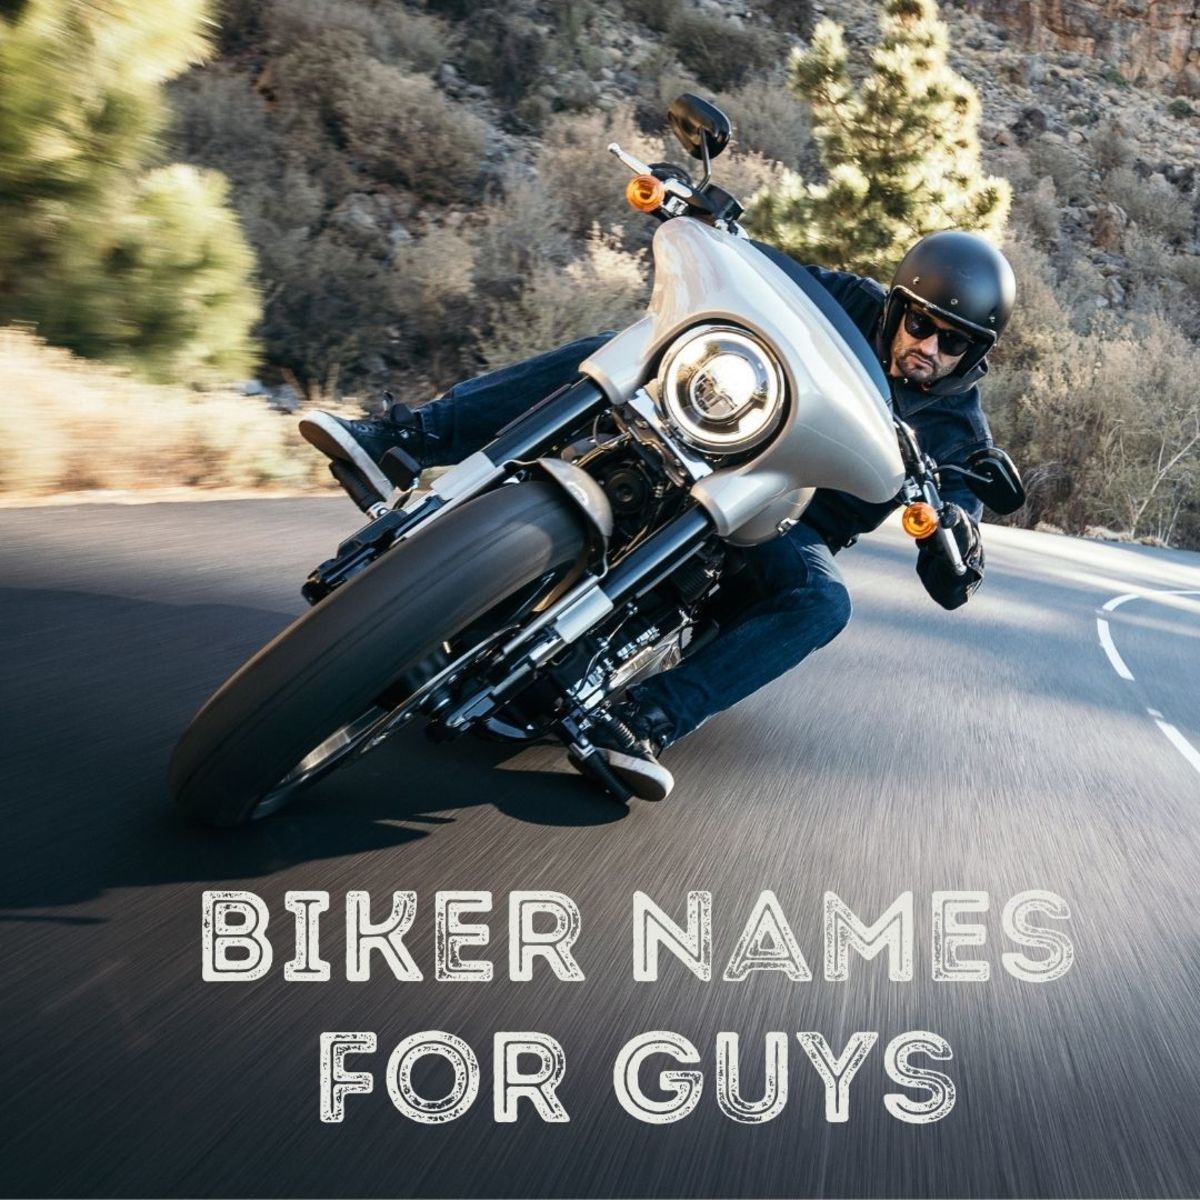 Biker name ideas for guys